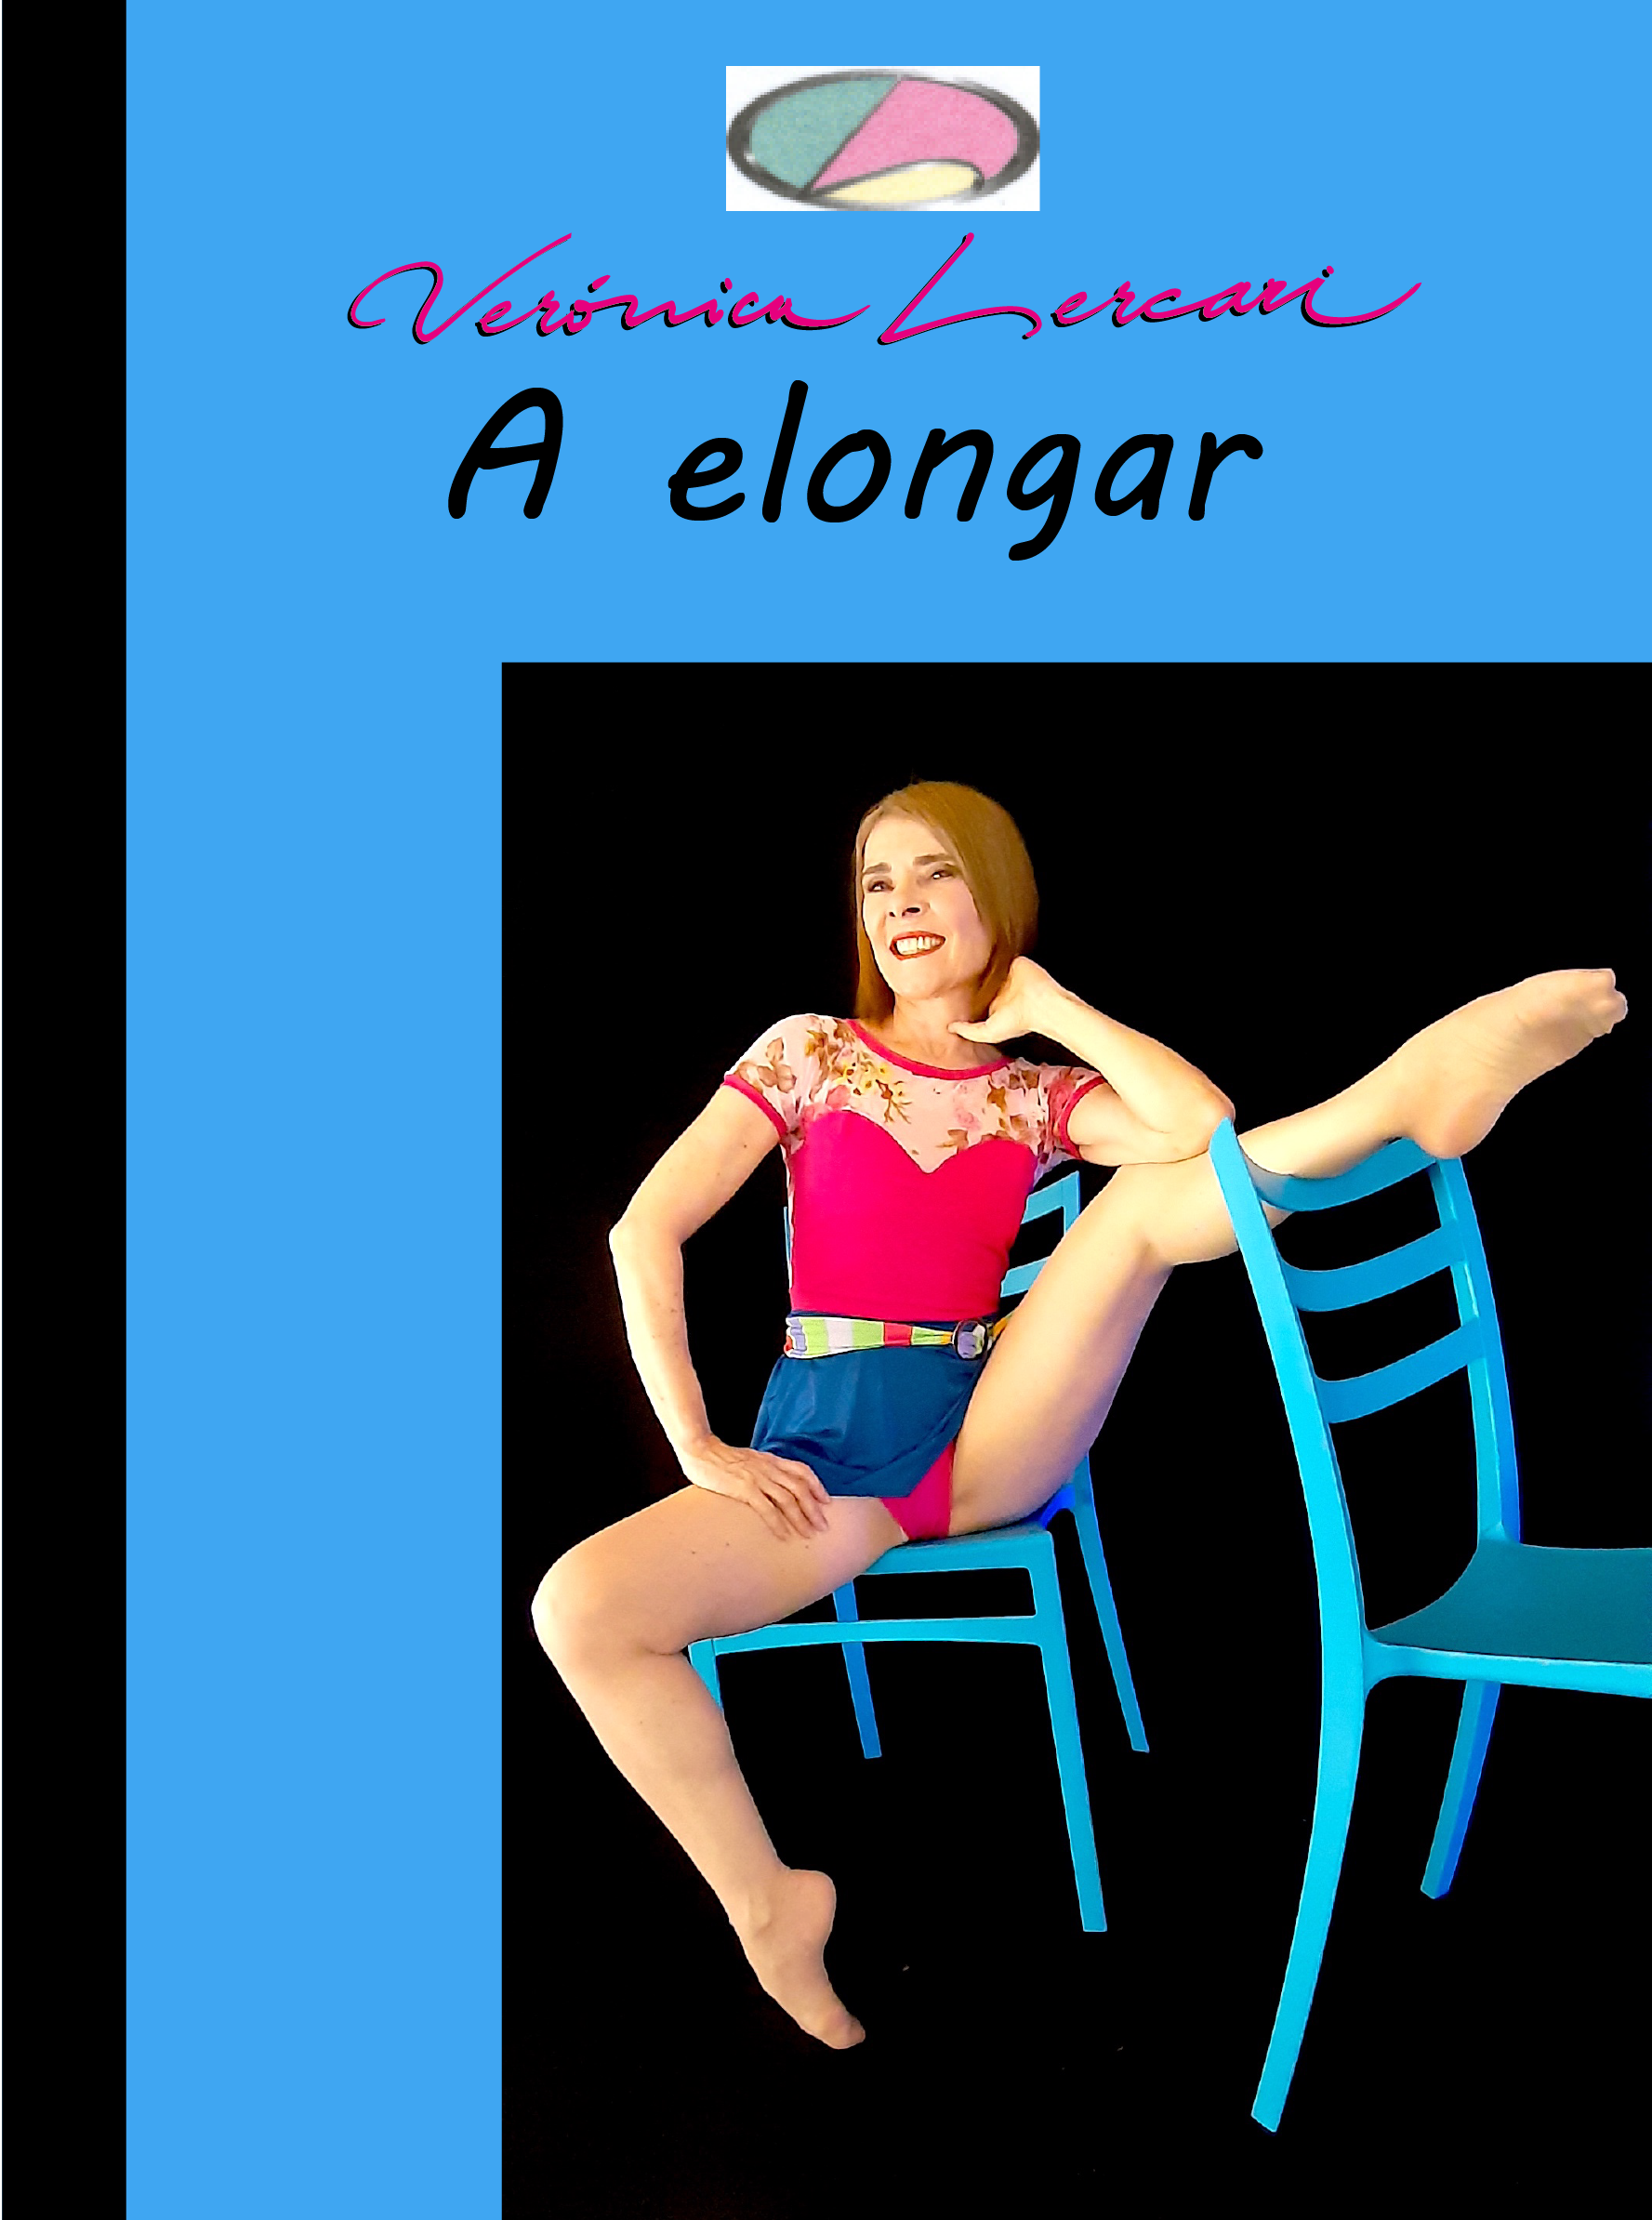 A elongar